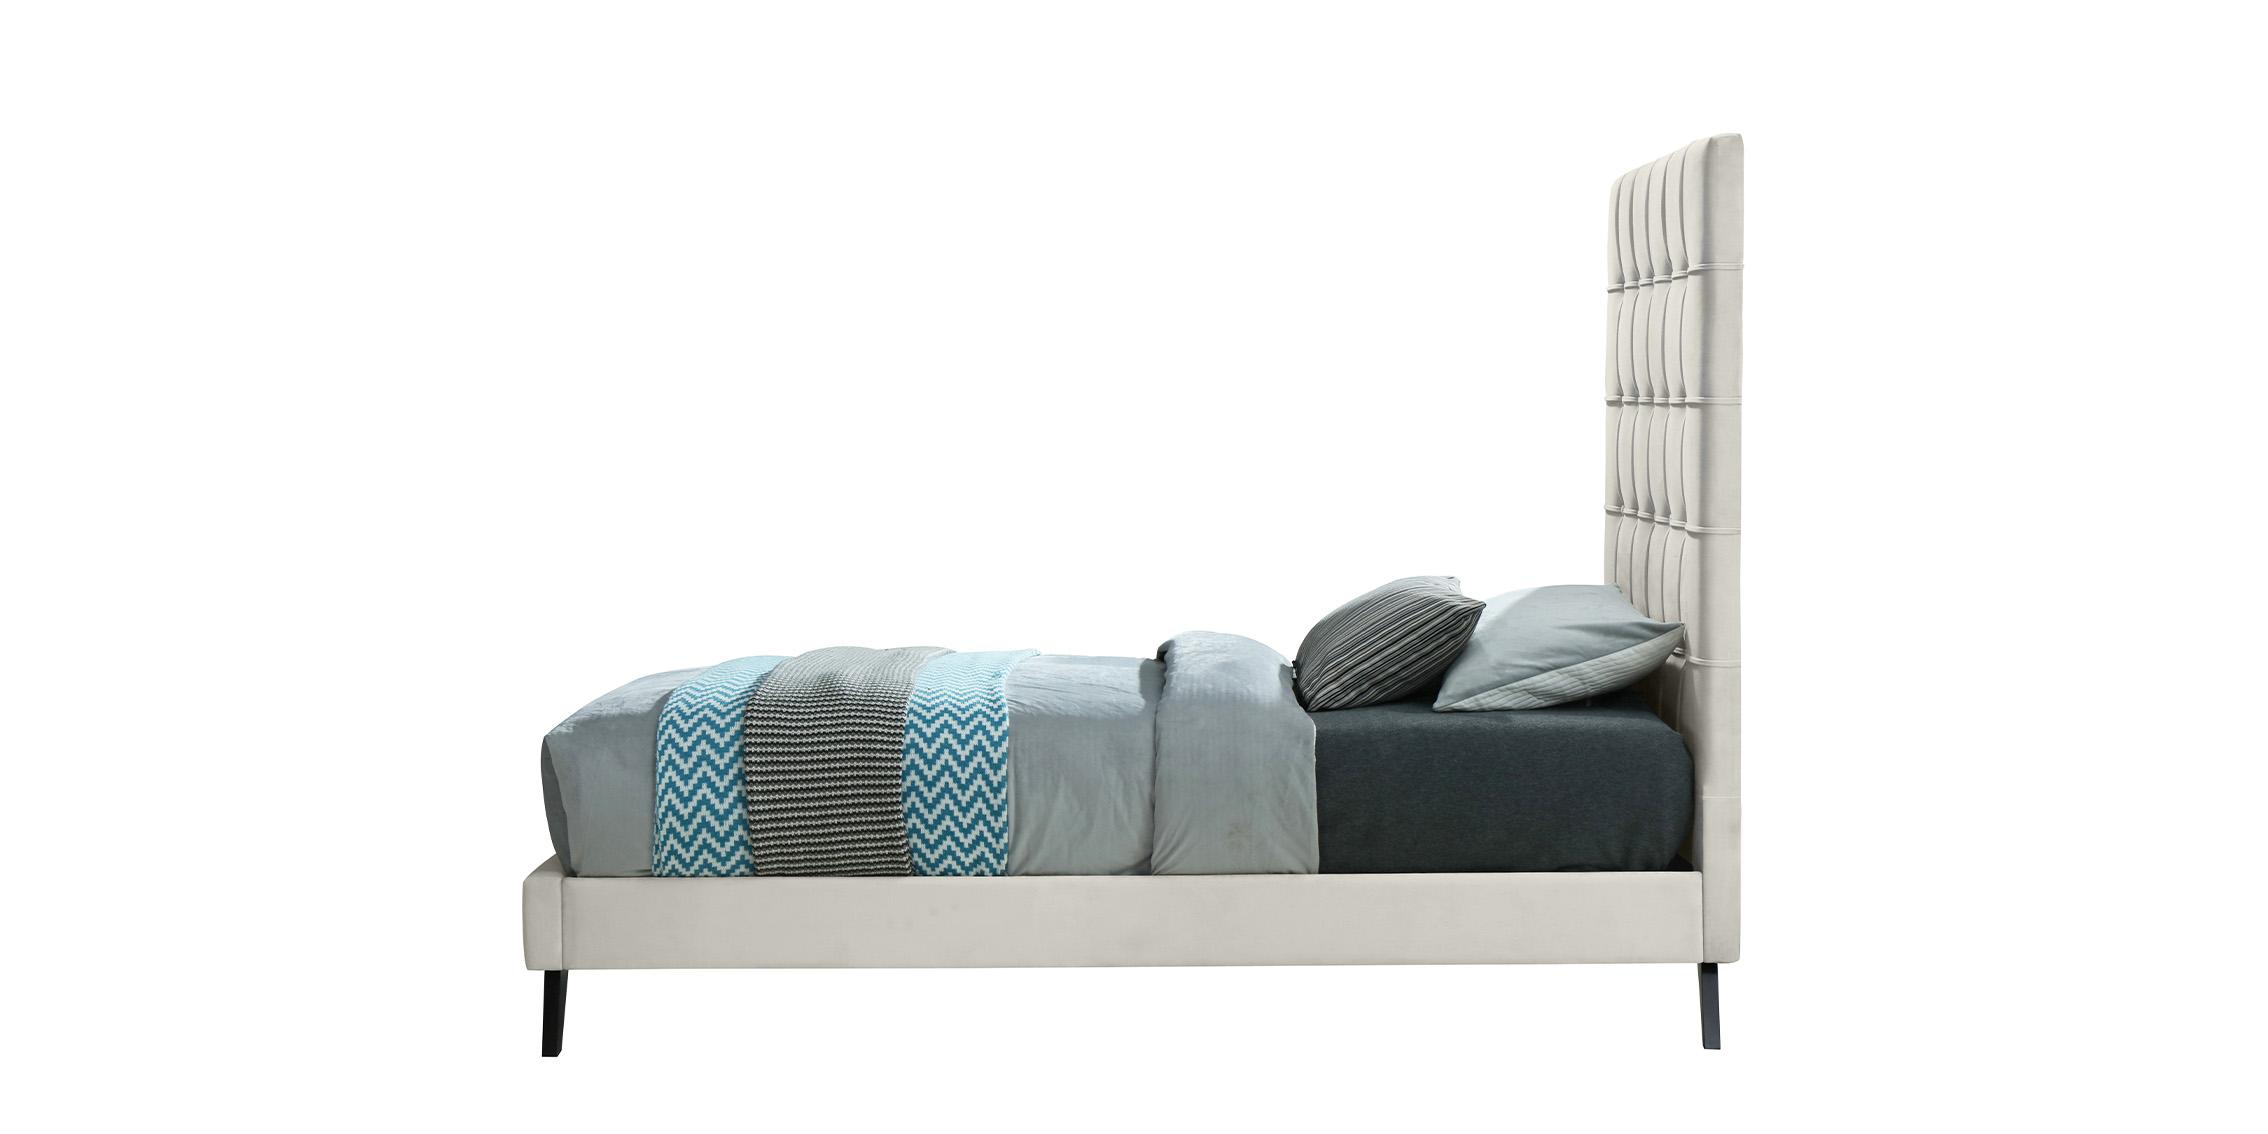 

    
EllyCream-T Meridian Furniture Platform Bed
